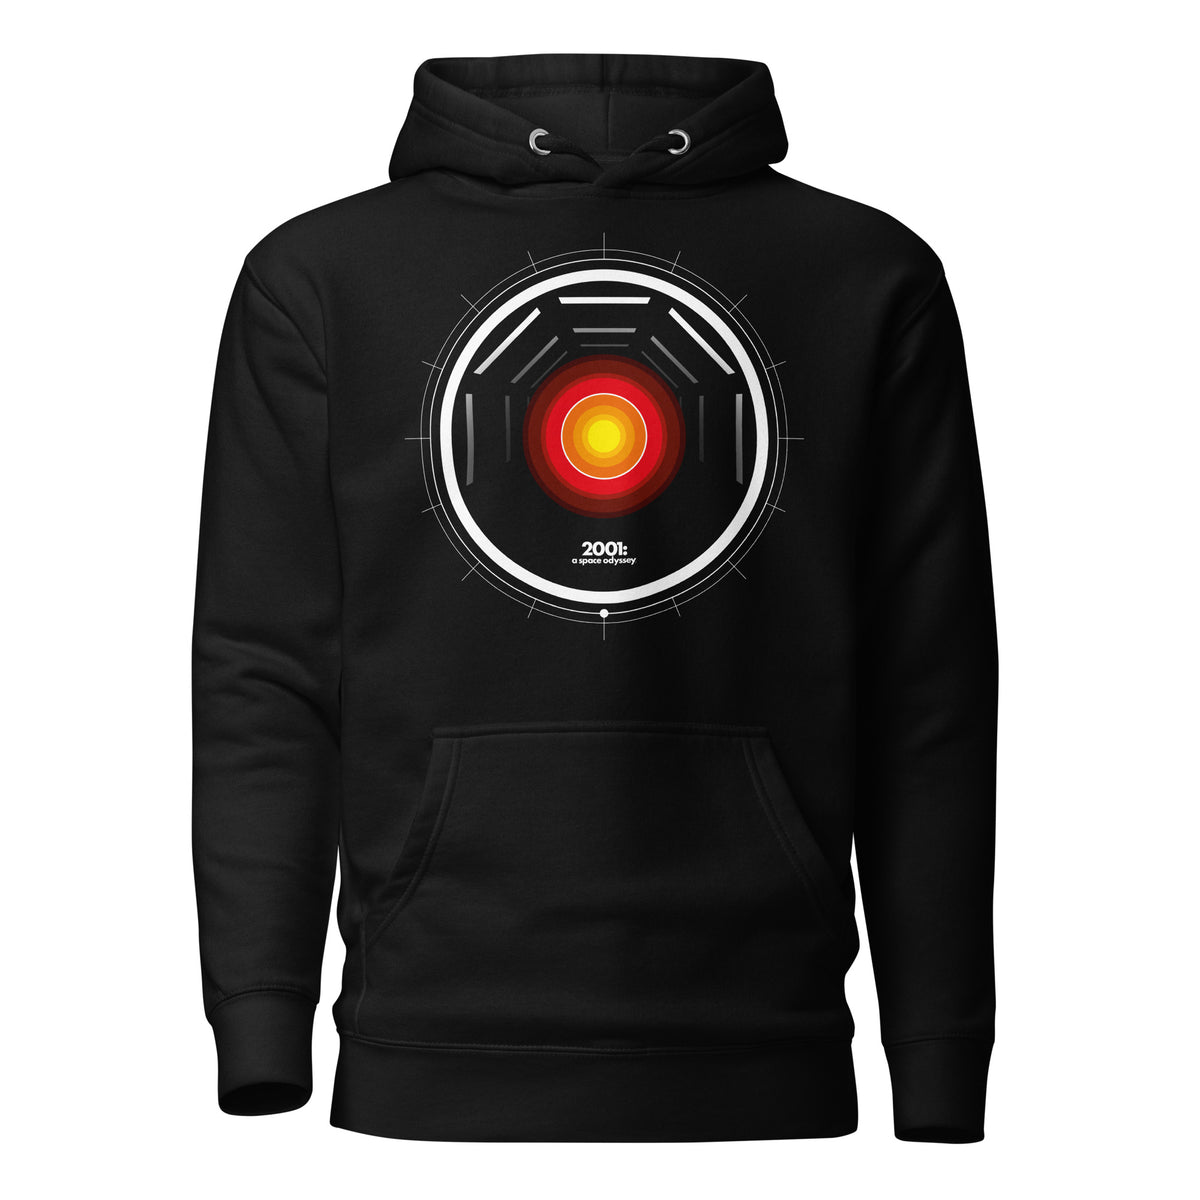 2001: A Space Odyssey - HAL - Black Hooded Sweatshirt